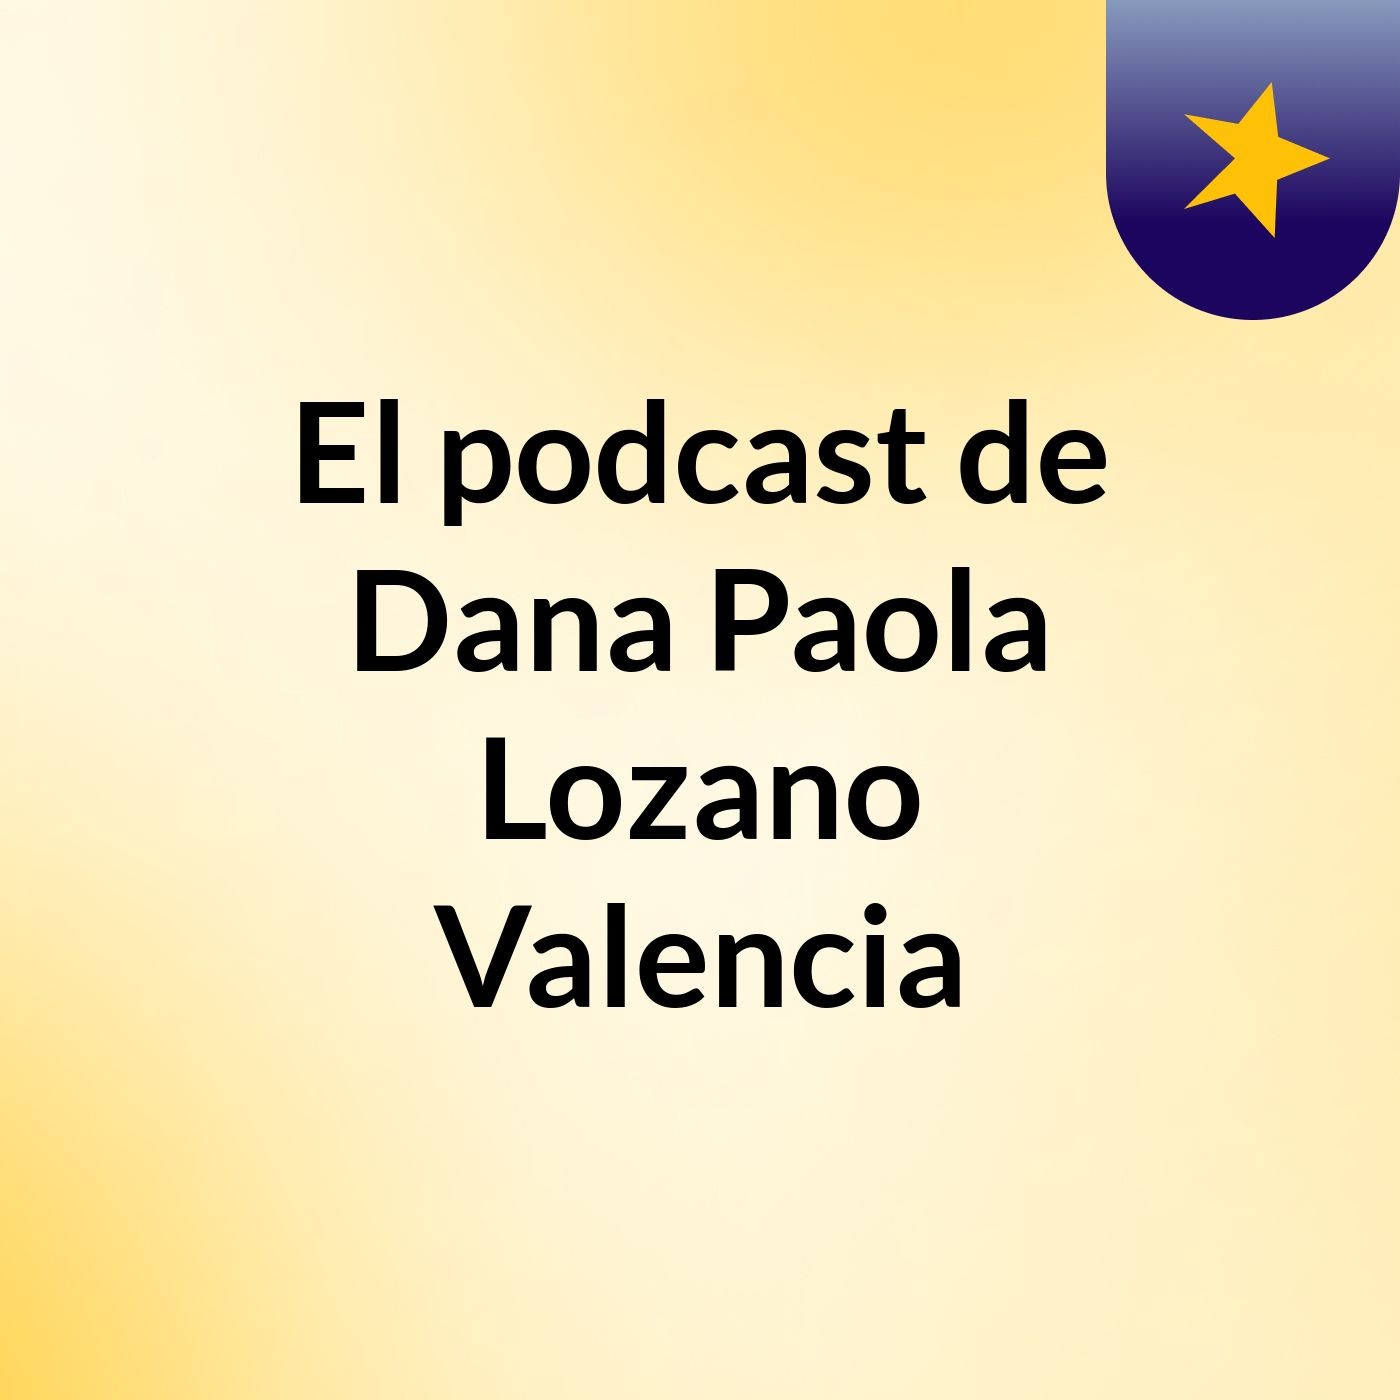 El podcast de Dana Paola Lozano Valencia